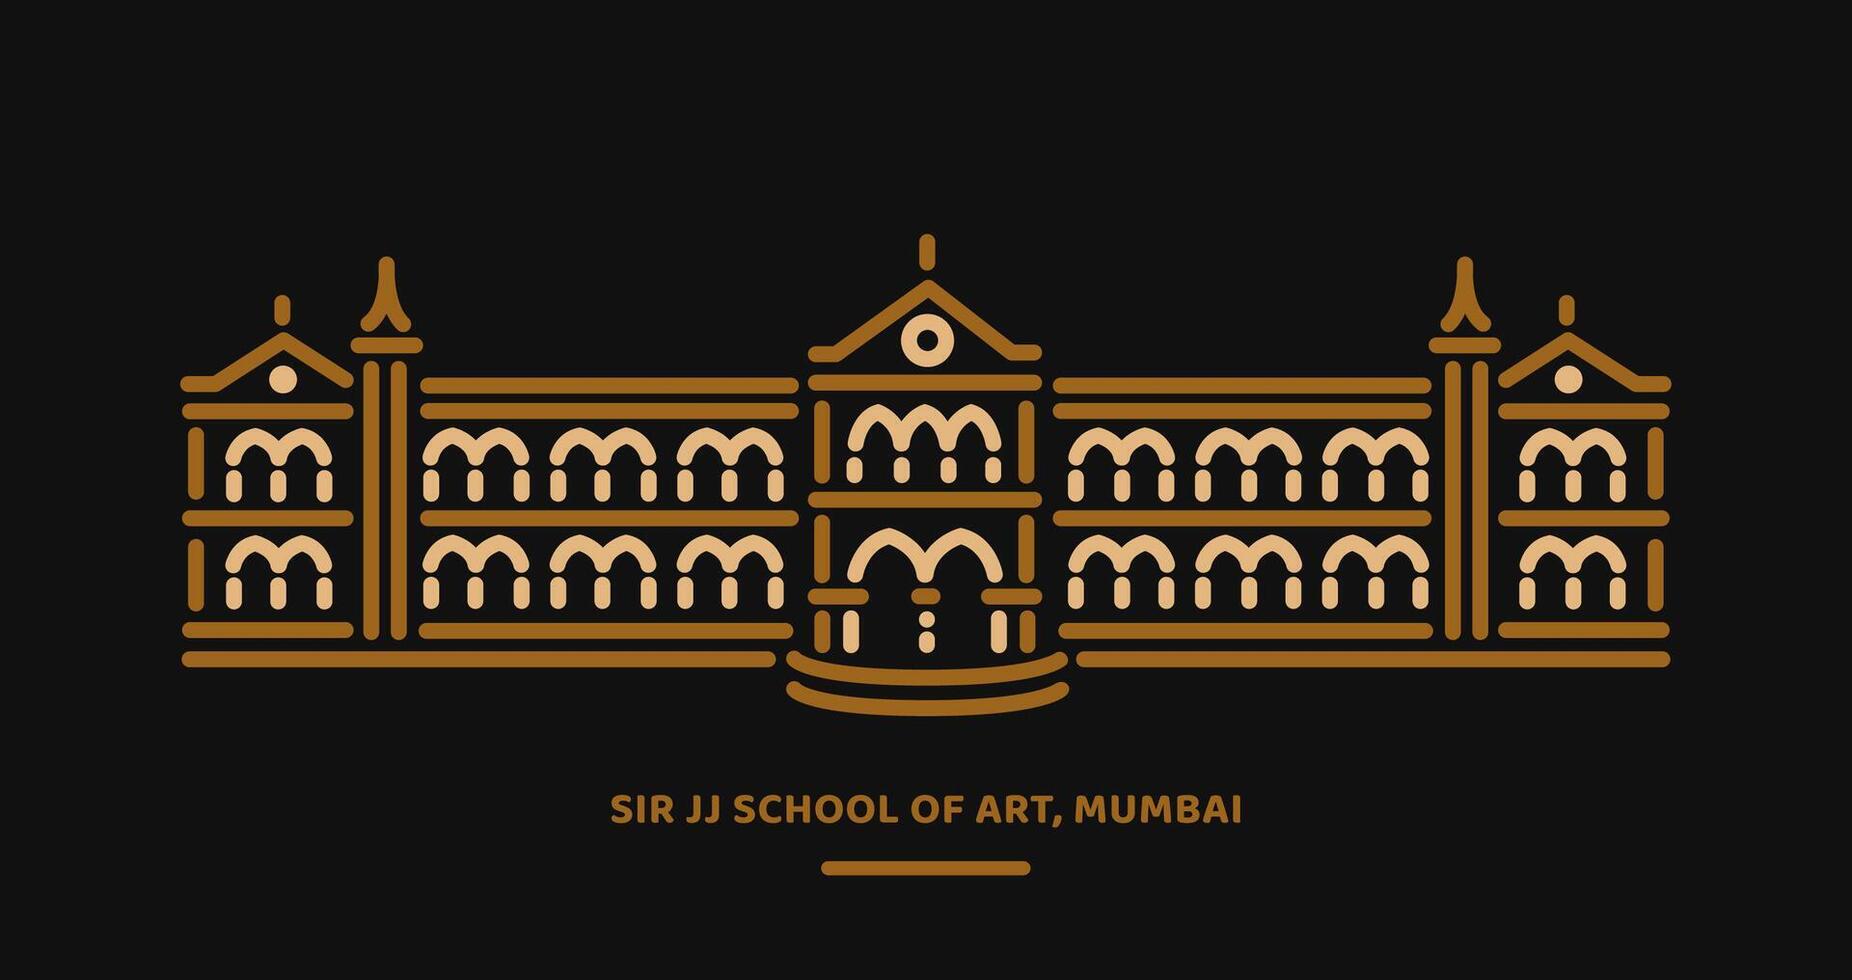 Monsieur jj école de art collage dans mumbai bâtiment ligne illustration. vecteur